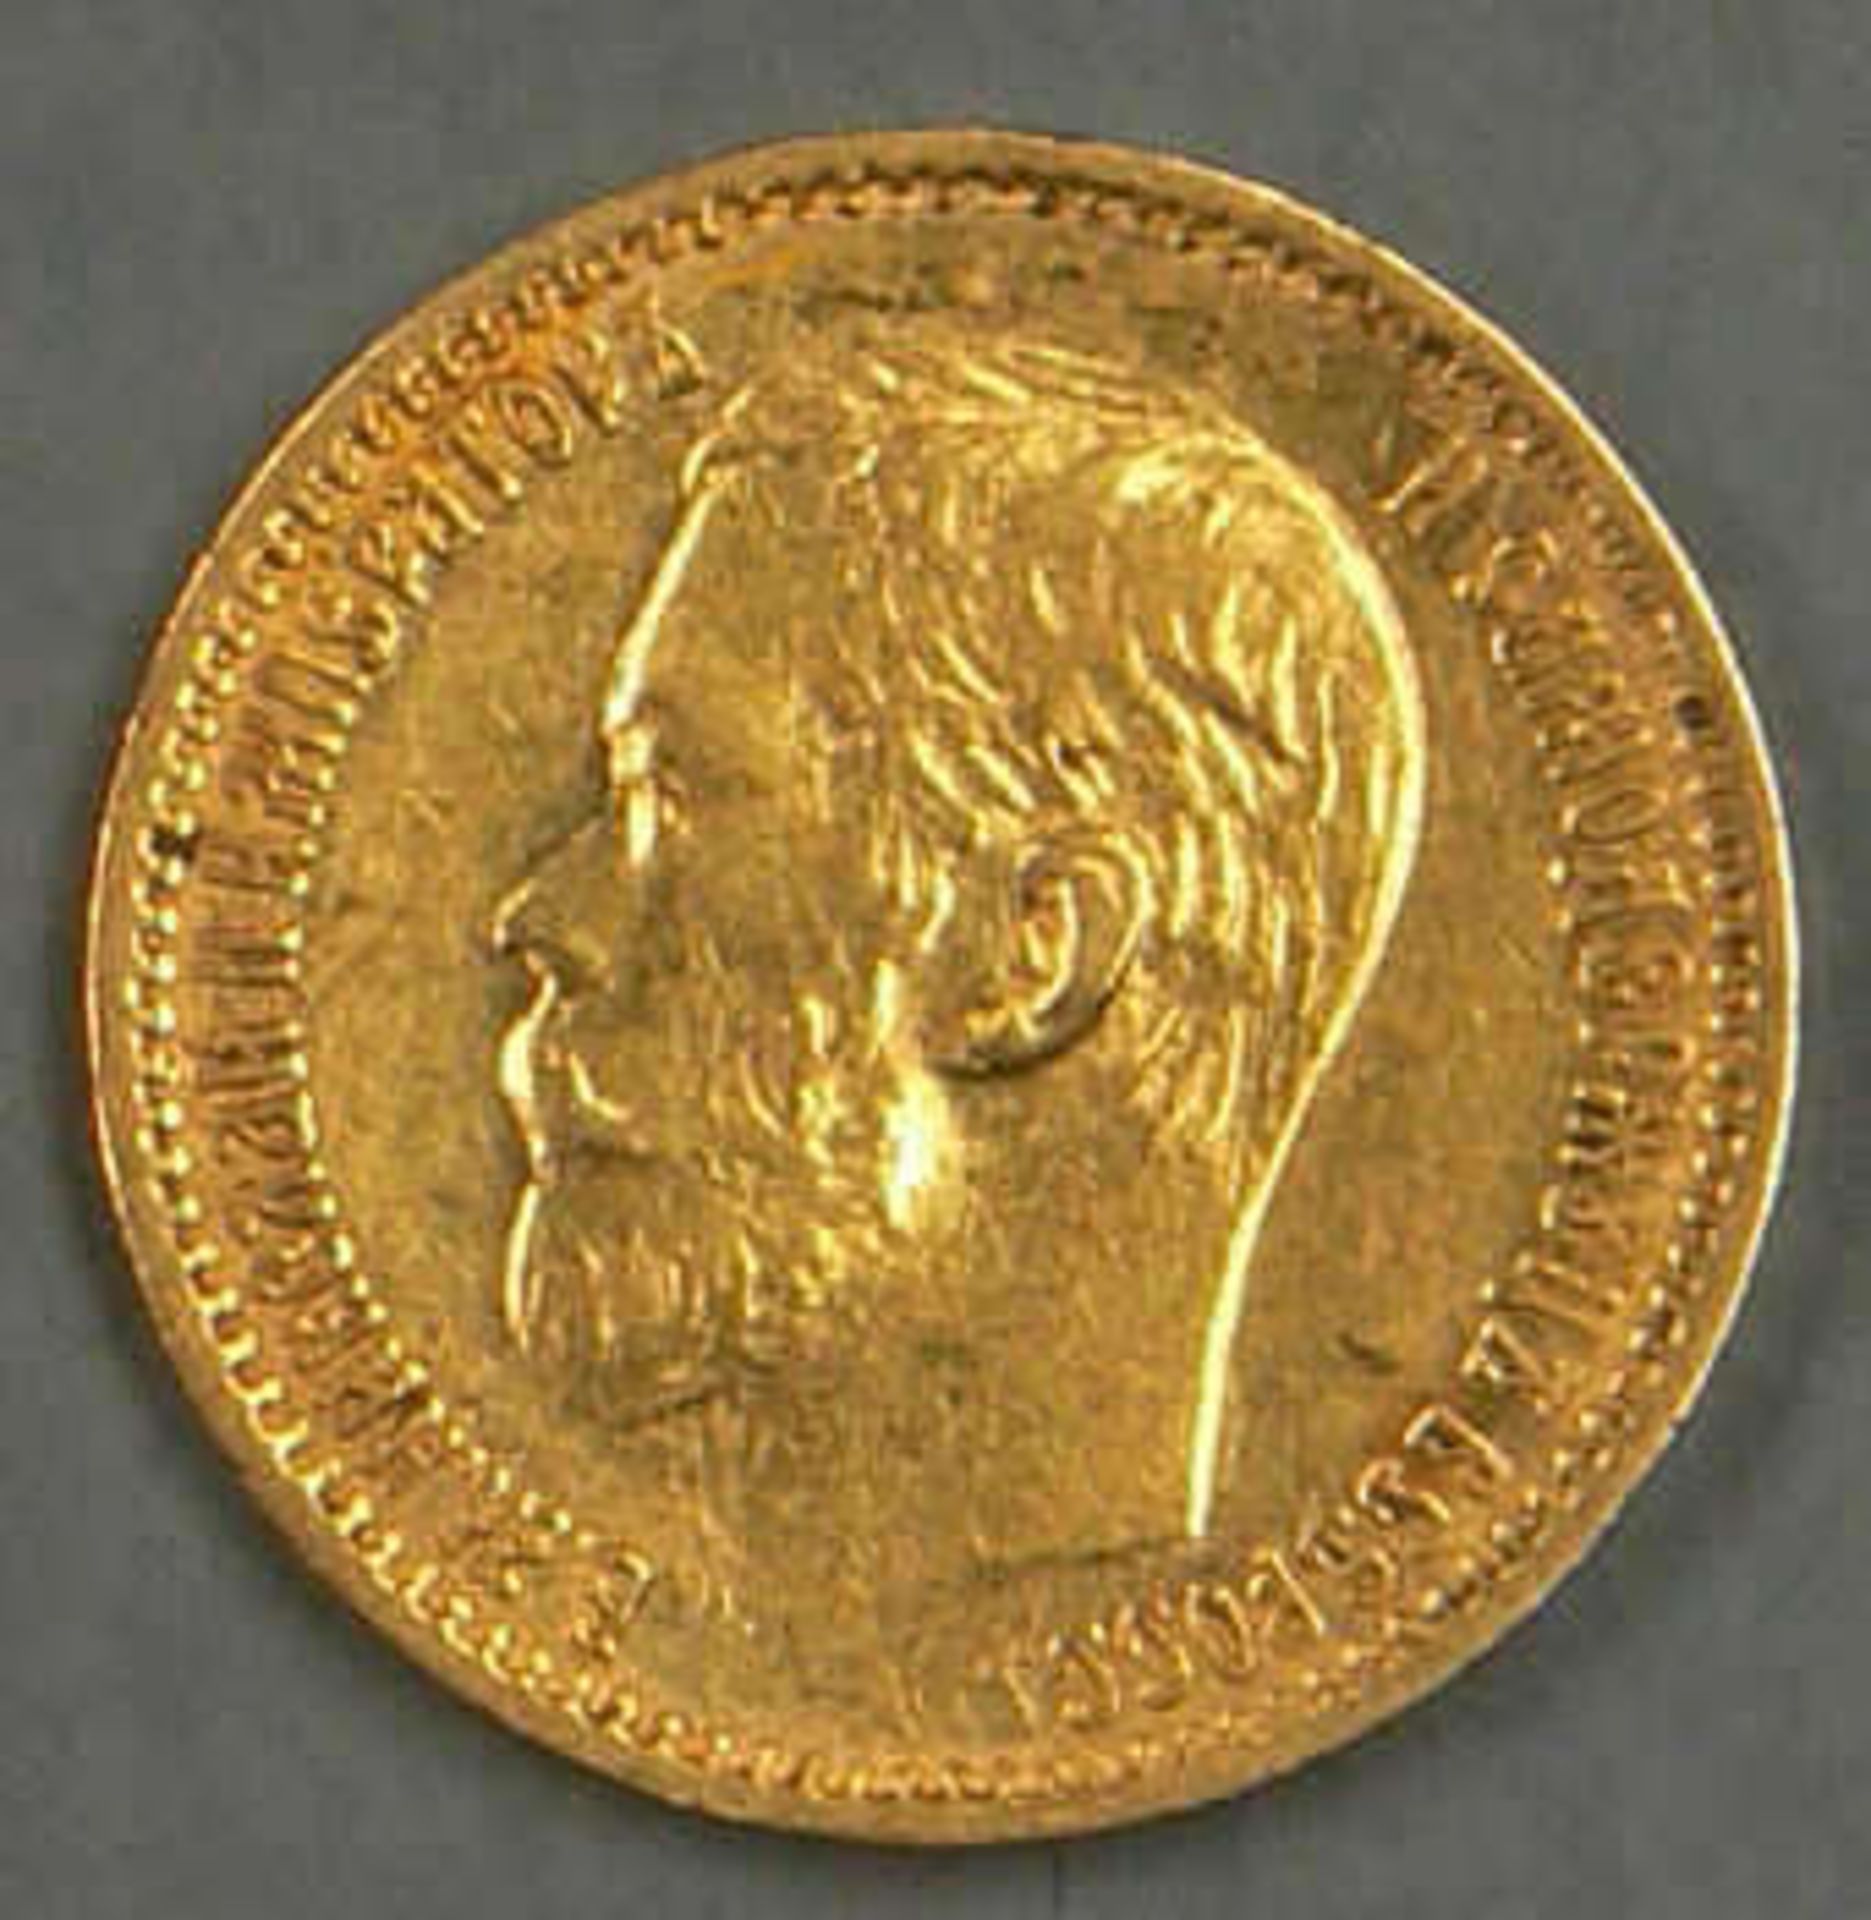 Russland 1898, 5 Rubel - Goldmünze "Nikolaus II.". 3,87g fein. Erhaltung: ss-vz. Russia 1898, 5